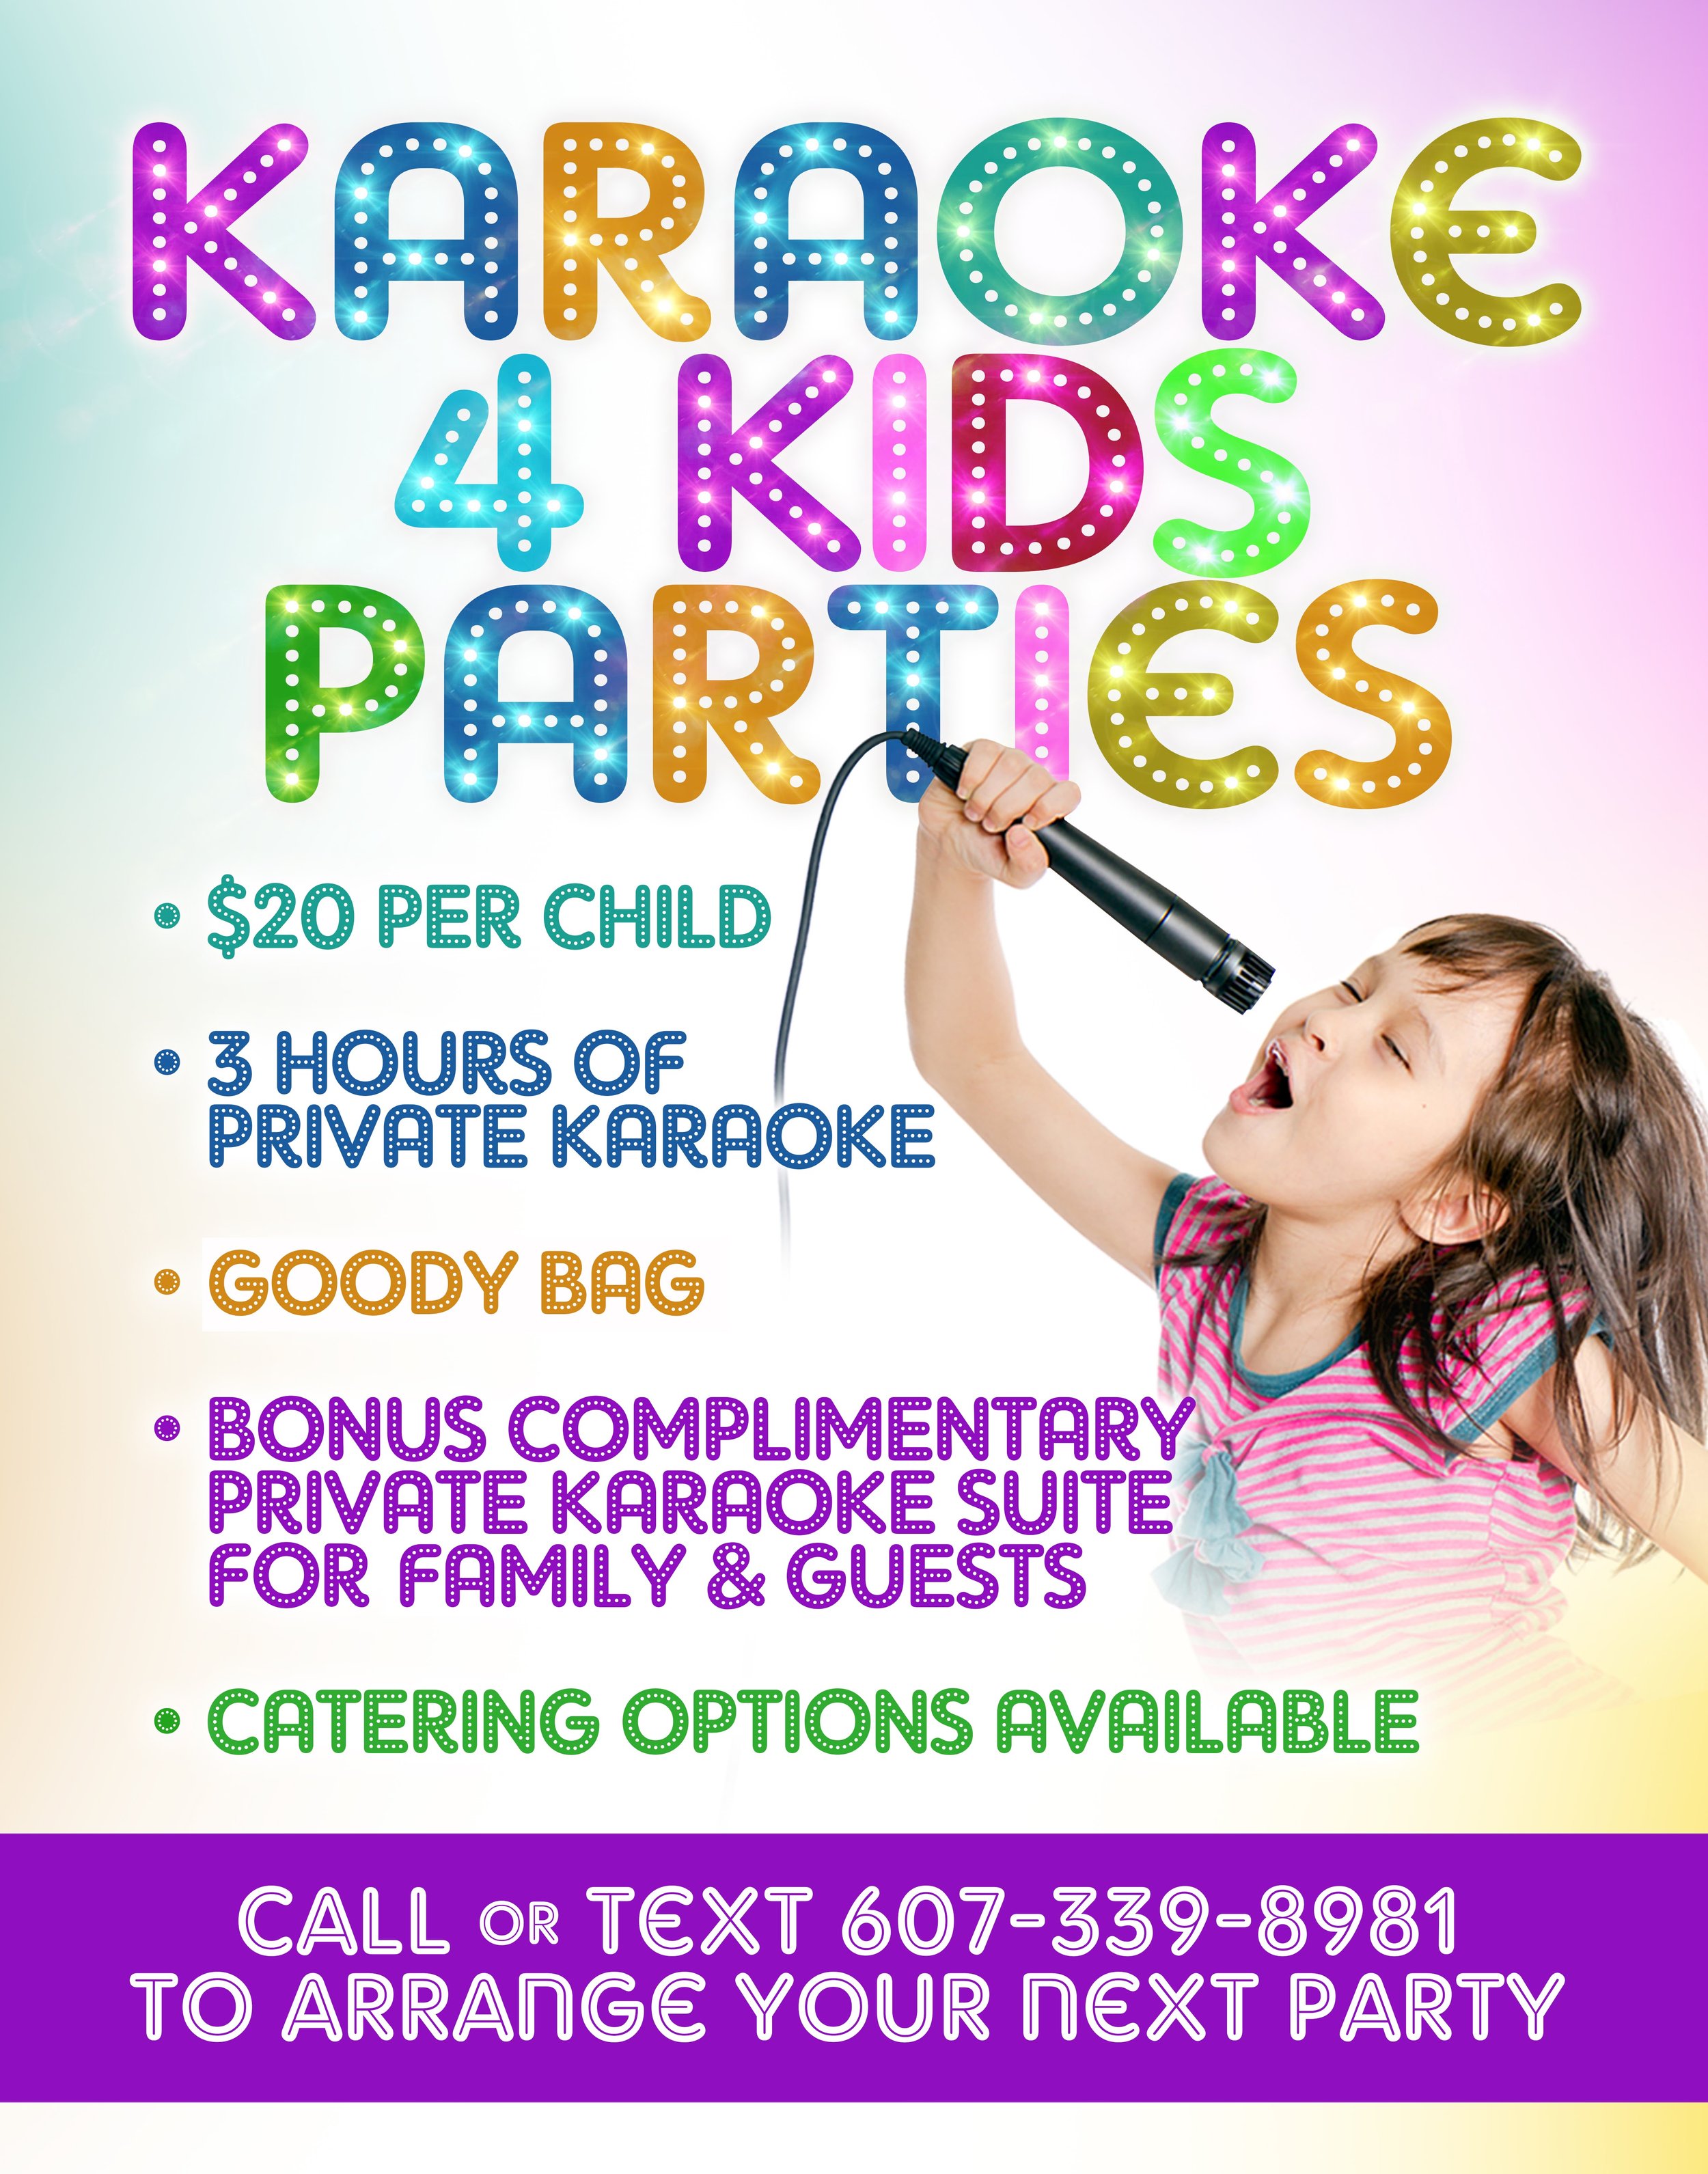 Karaoke party for kids